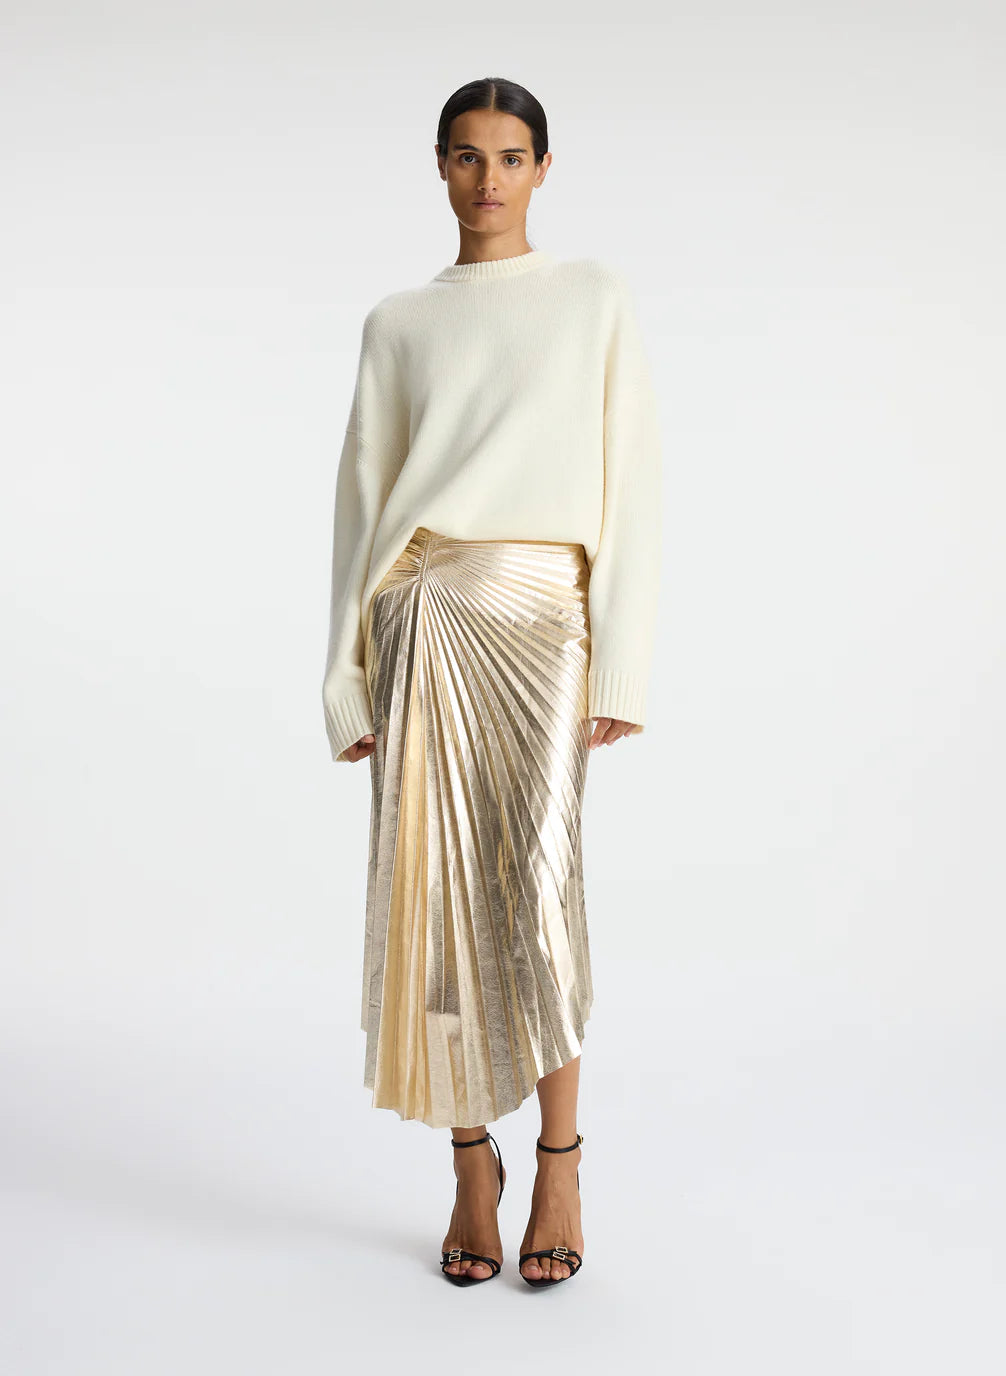 Tori Metallic Vegan Leather Skirt - Pale Gold